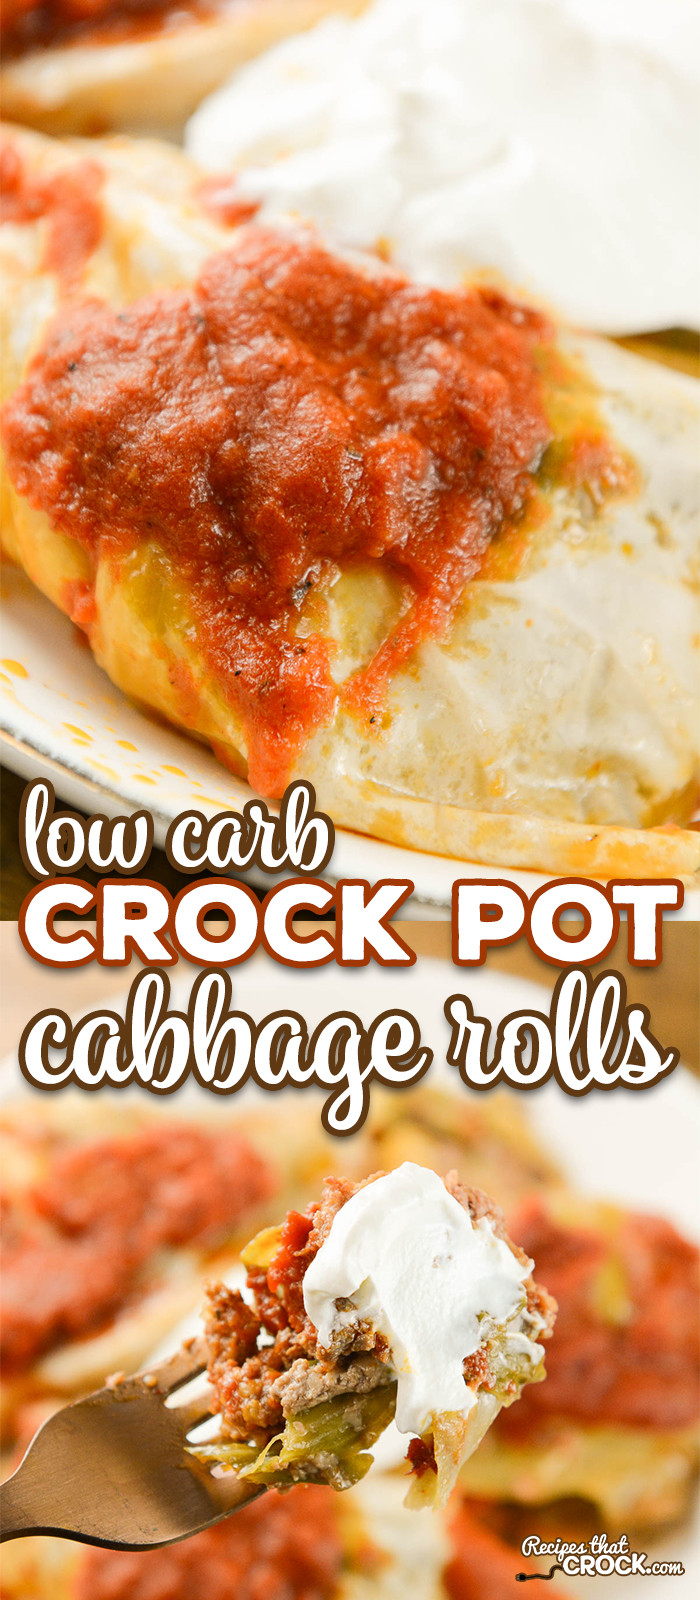 Crockpot Low Carb Recipes
 Crock Pot Cabbage Rolls Recipes That Crock